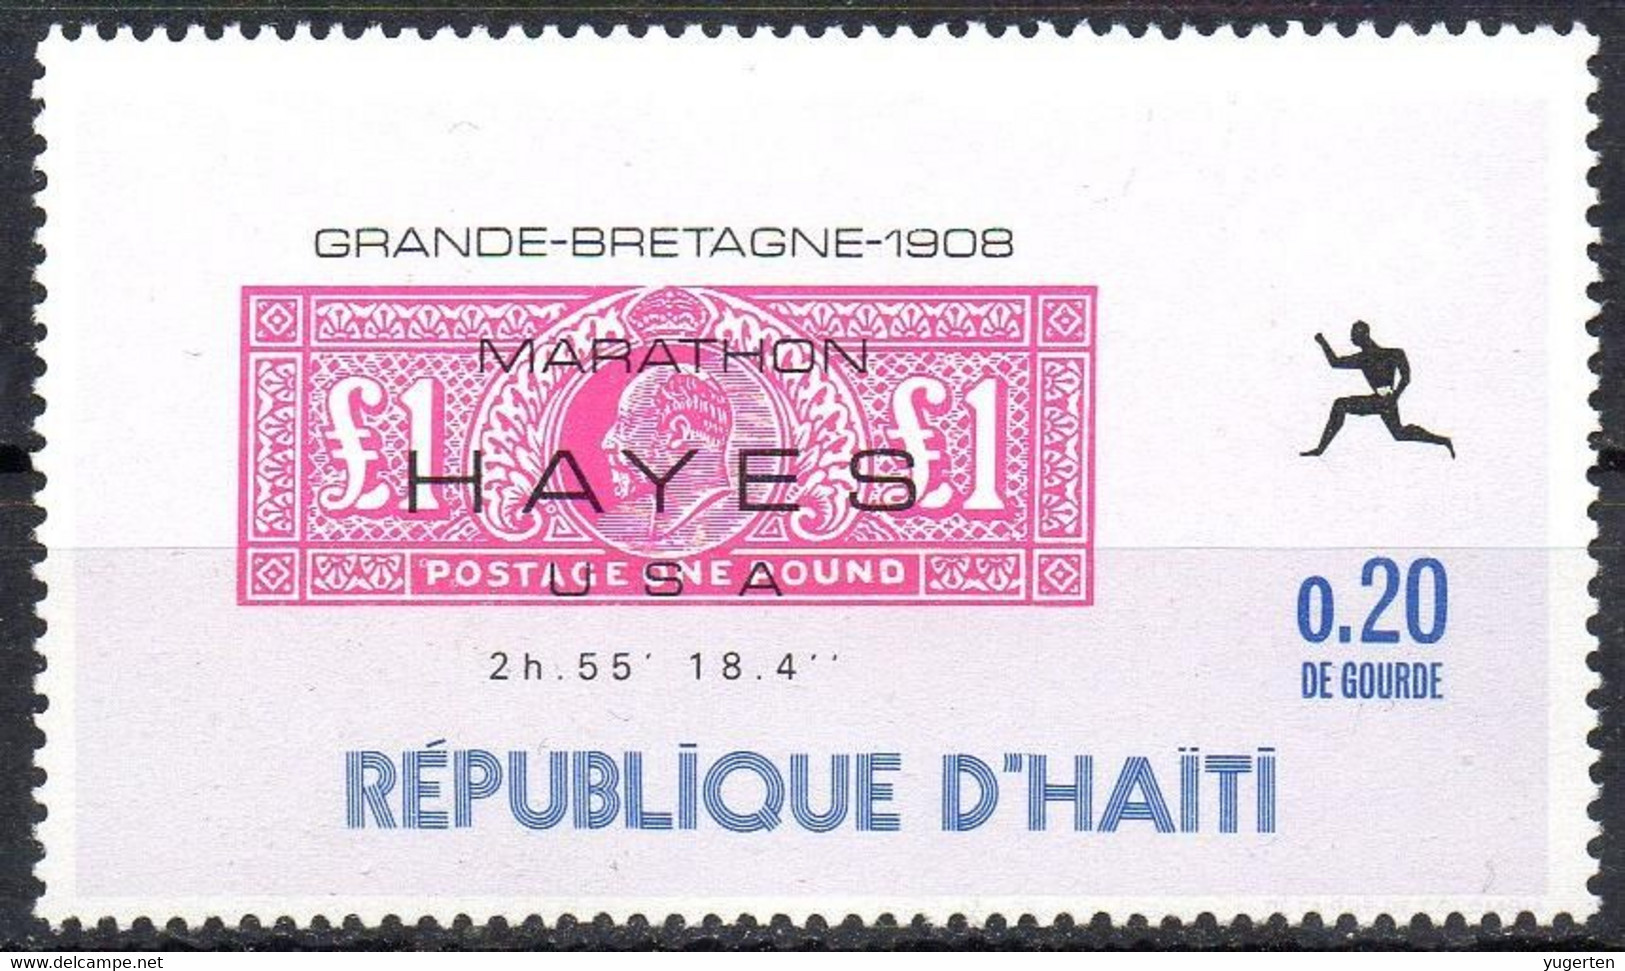 HAITI - 1969 - 1v - MNH** - Olympic Marathon Winners - Hayes - USA - Great Britain 1908 - Olympics Maratón Maratona - Summer 1908: London